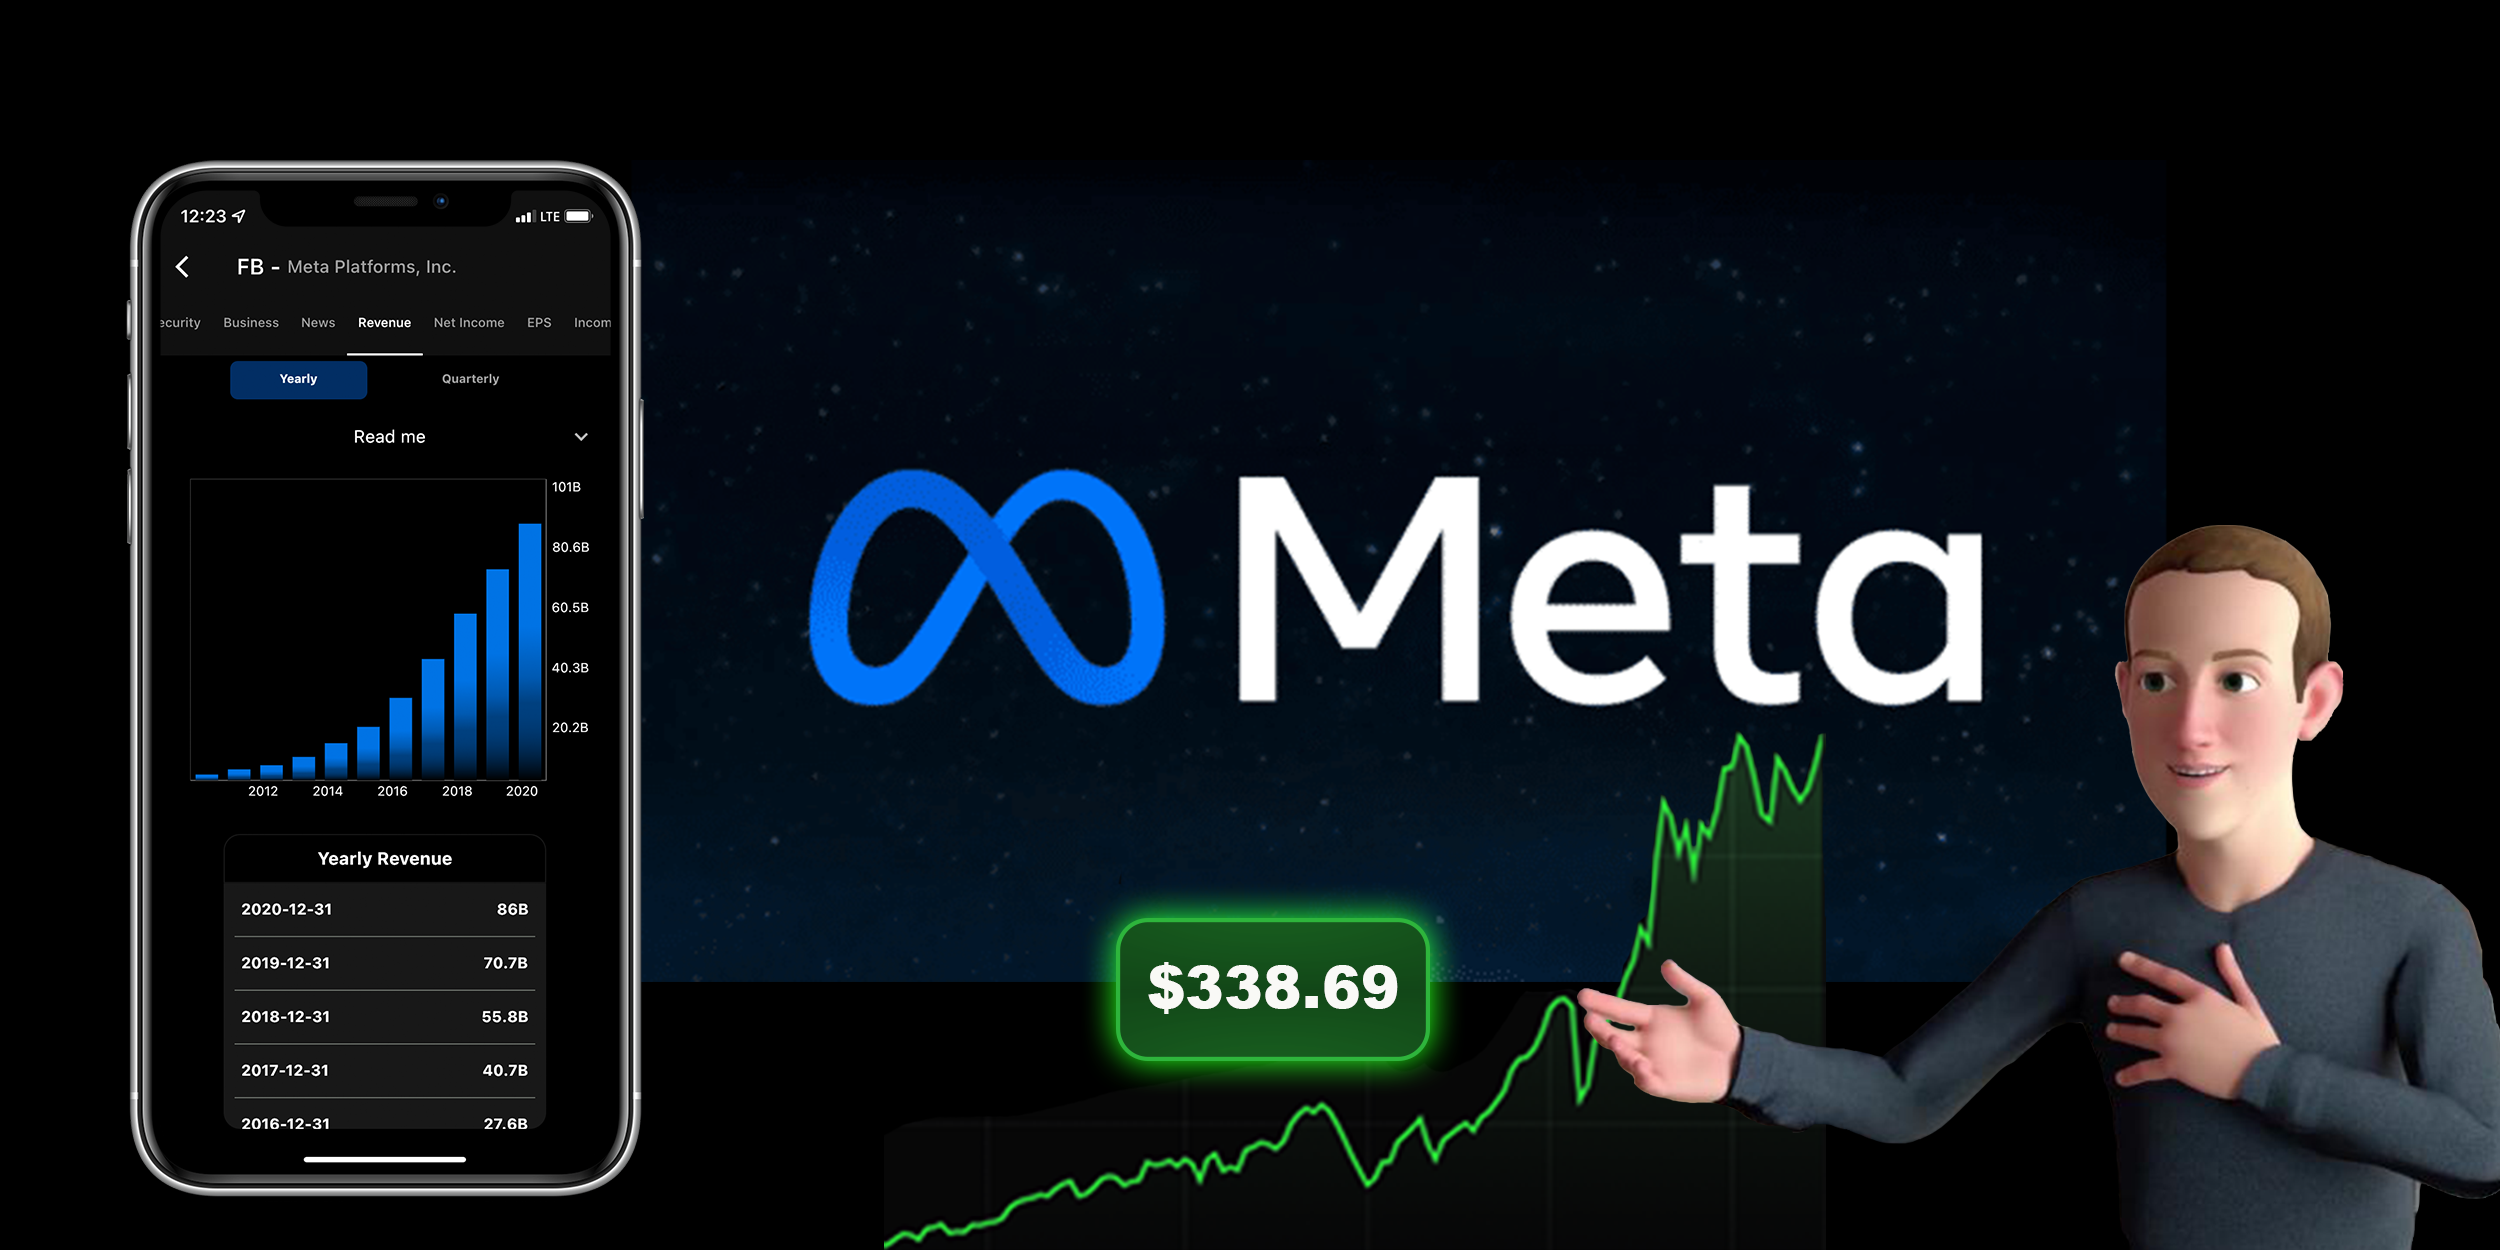 ViMoney: Top 3 cổ phiếu Metaverse tốt nhất cho danh mục tháng 1 năm 2022 - Meta